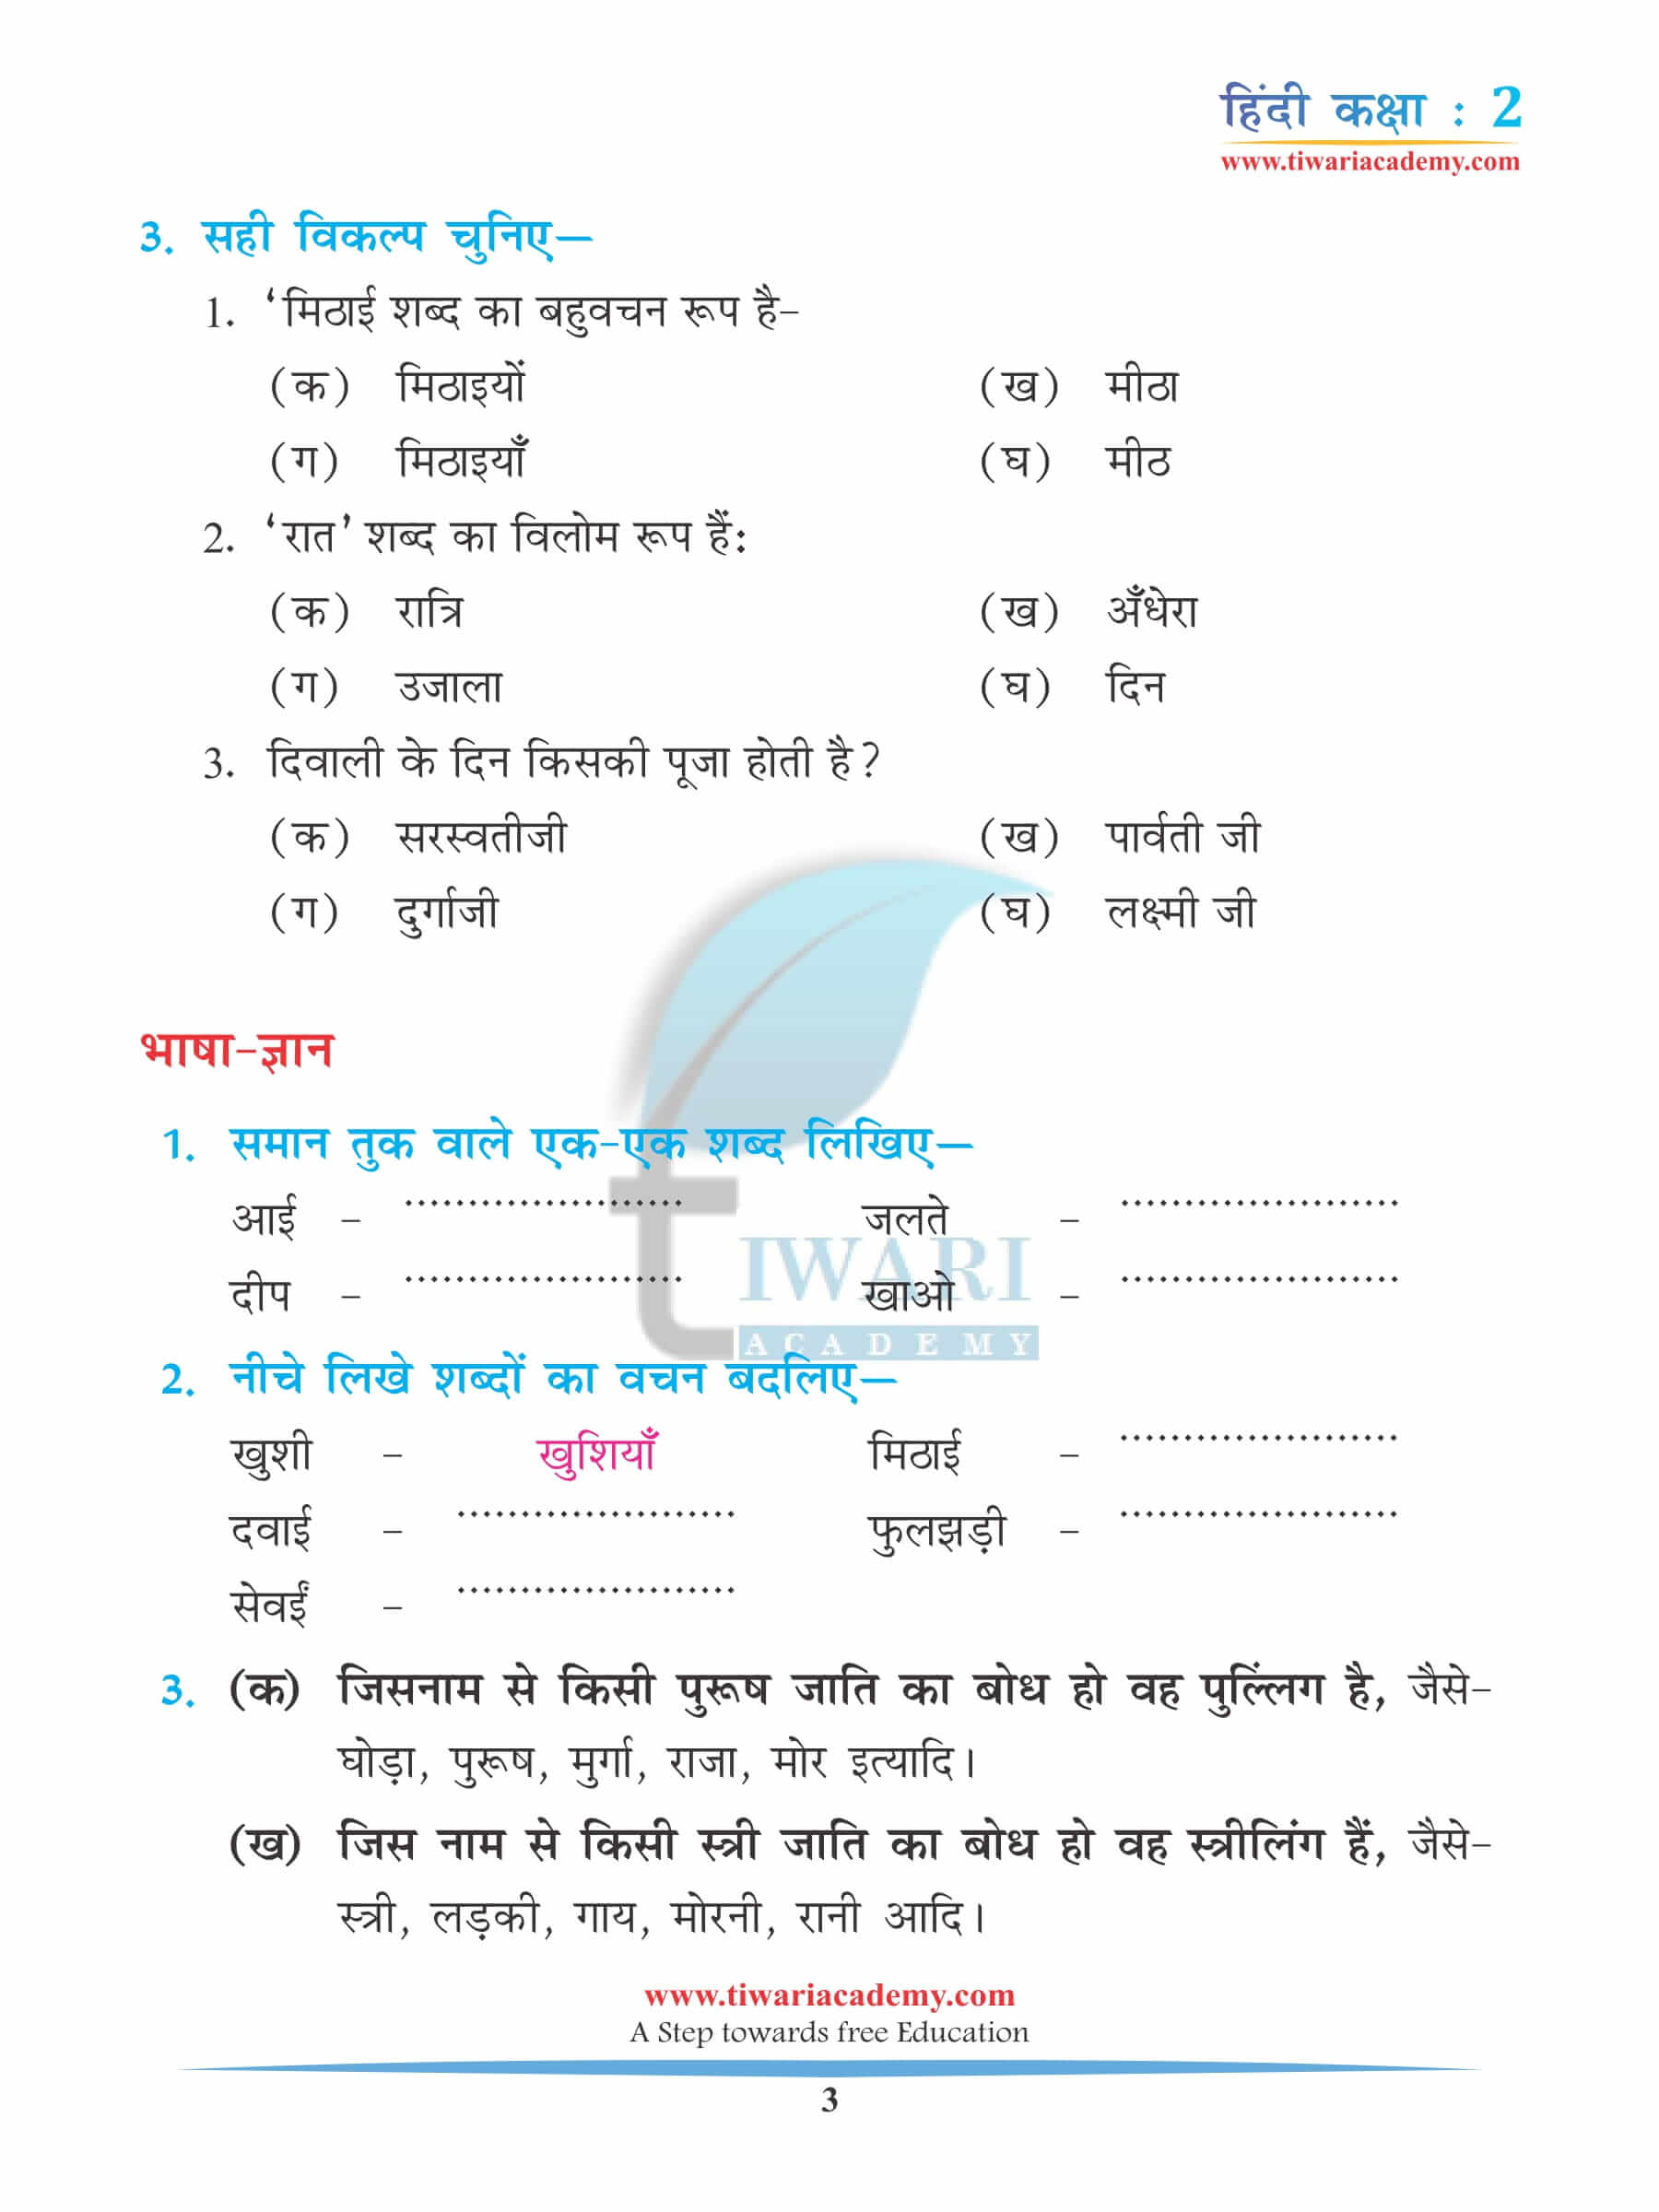 कक्षा 2 हिंदी अध्याय 10 अभ्यास के उत्तर